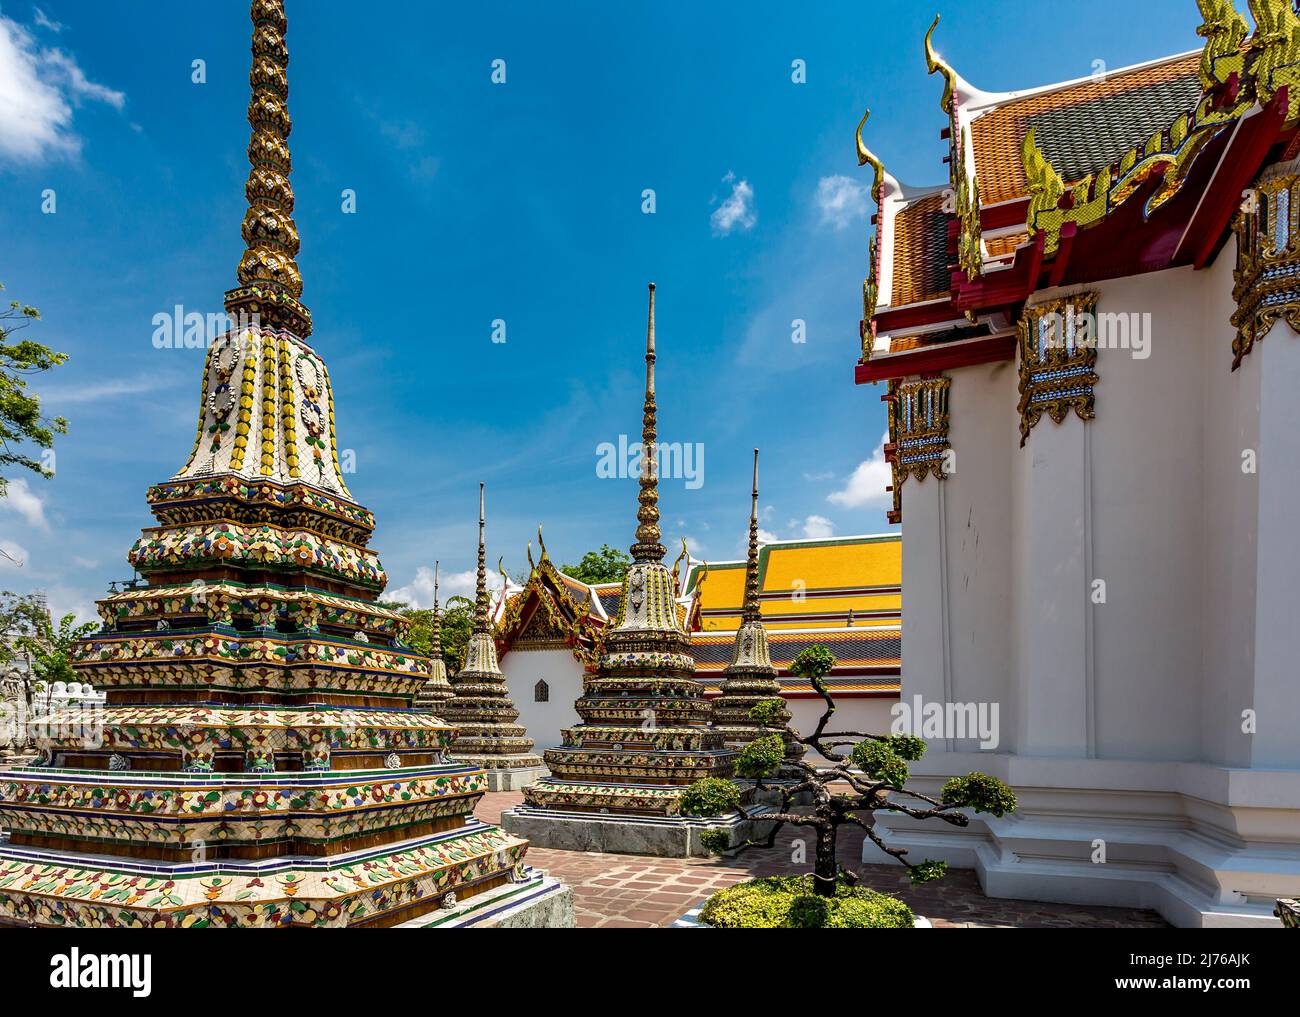 Chedi, Wat Pho Tempel, Wat Phra Chetuphon, Tempel des Reclining Buddha, Bangkok, Thailand, Asien Stockfoto